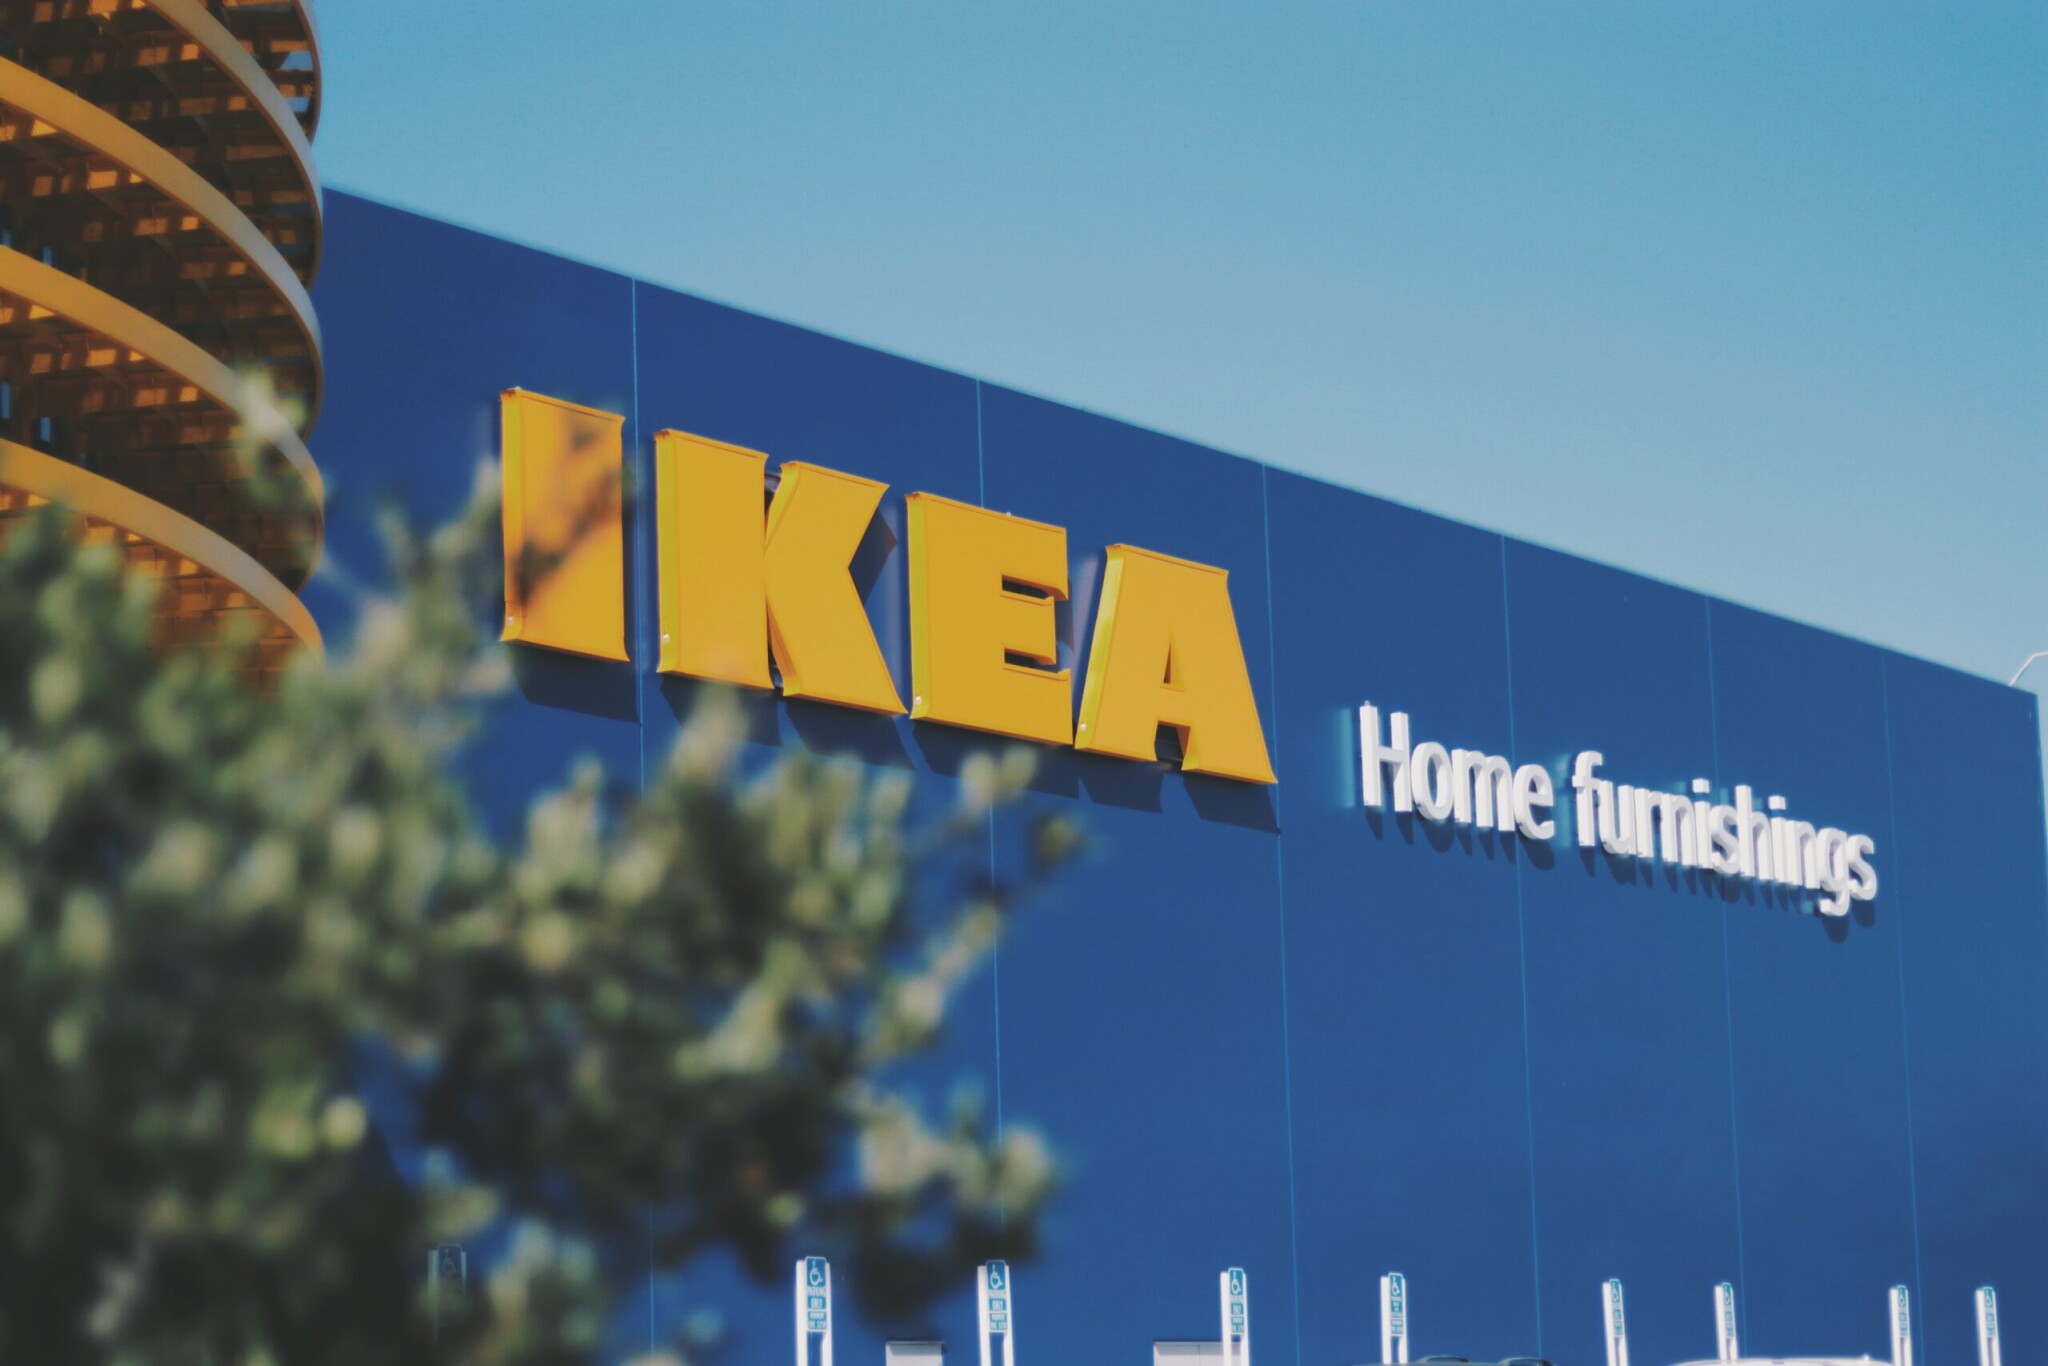 Rusi nakupujú posledný tovar z H&M a Ikea. Tie čistia sklady pred odchodom z krajiny